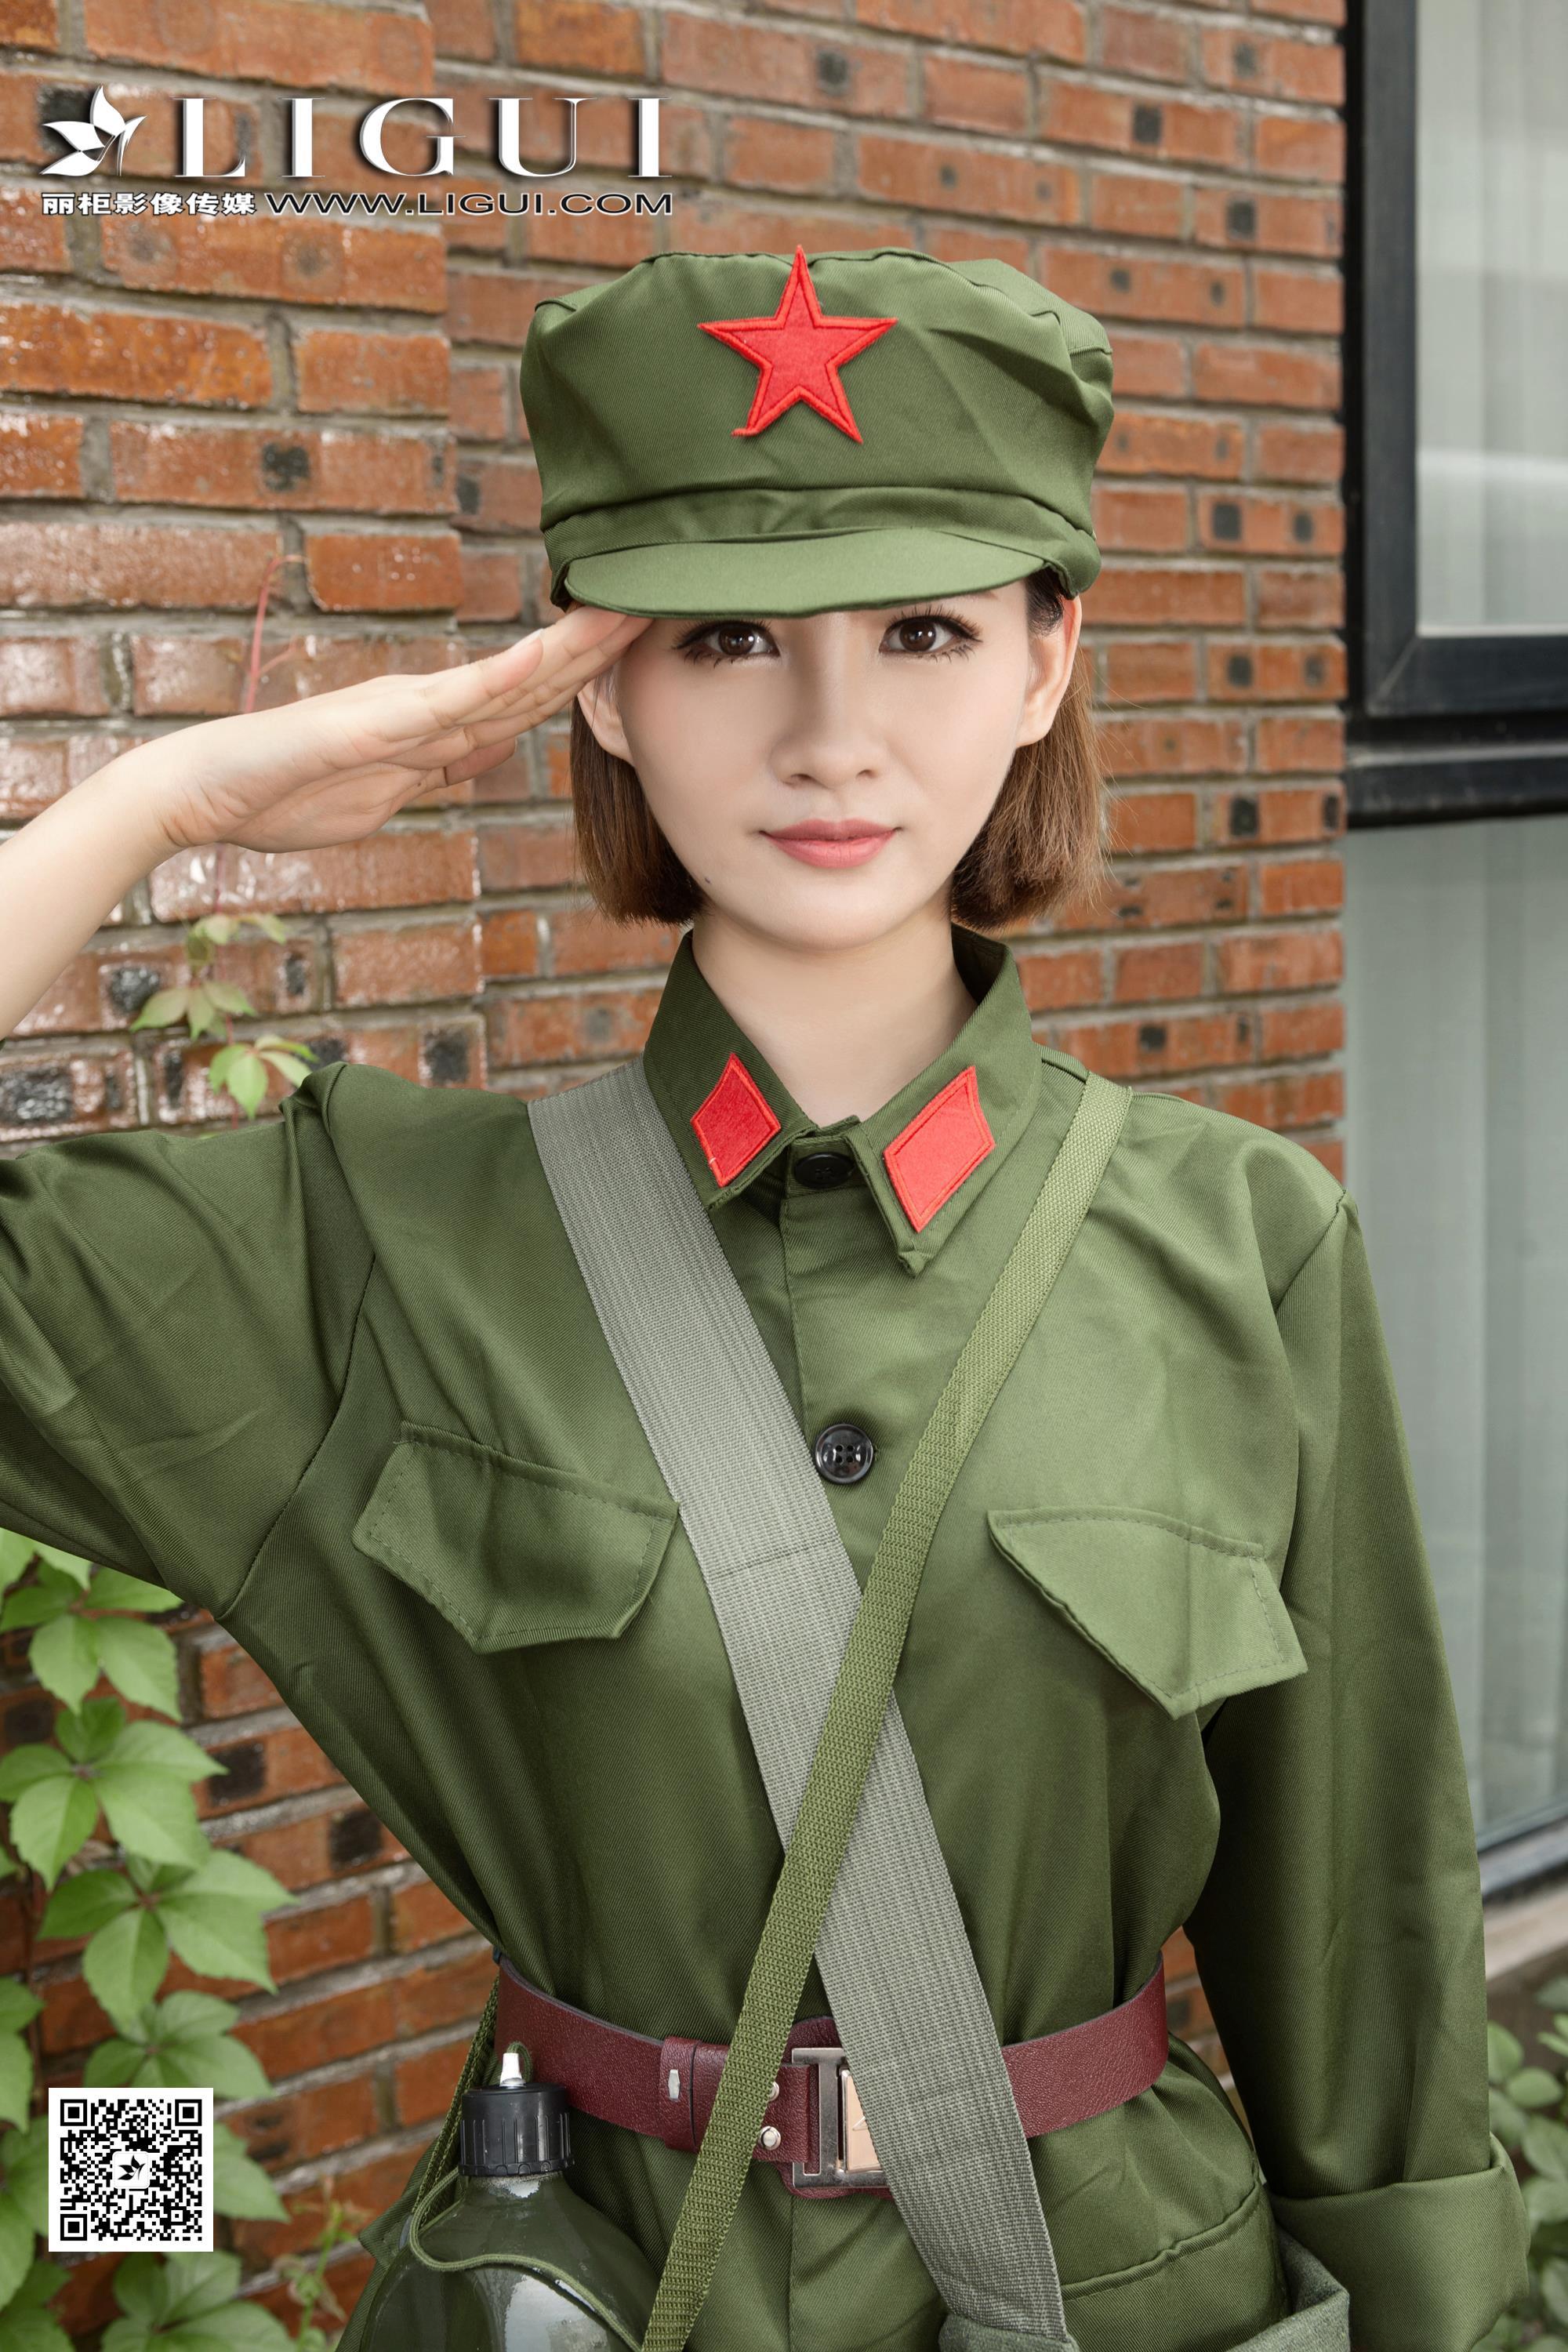 [Ligui丽柜会所]2017-08-01 Model AMY 八一特辑 绿色军装致敬红色娘子军,